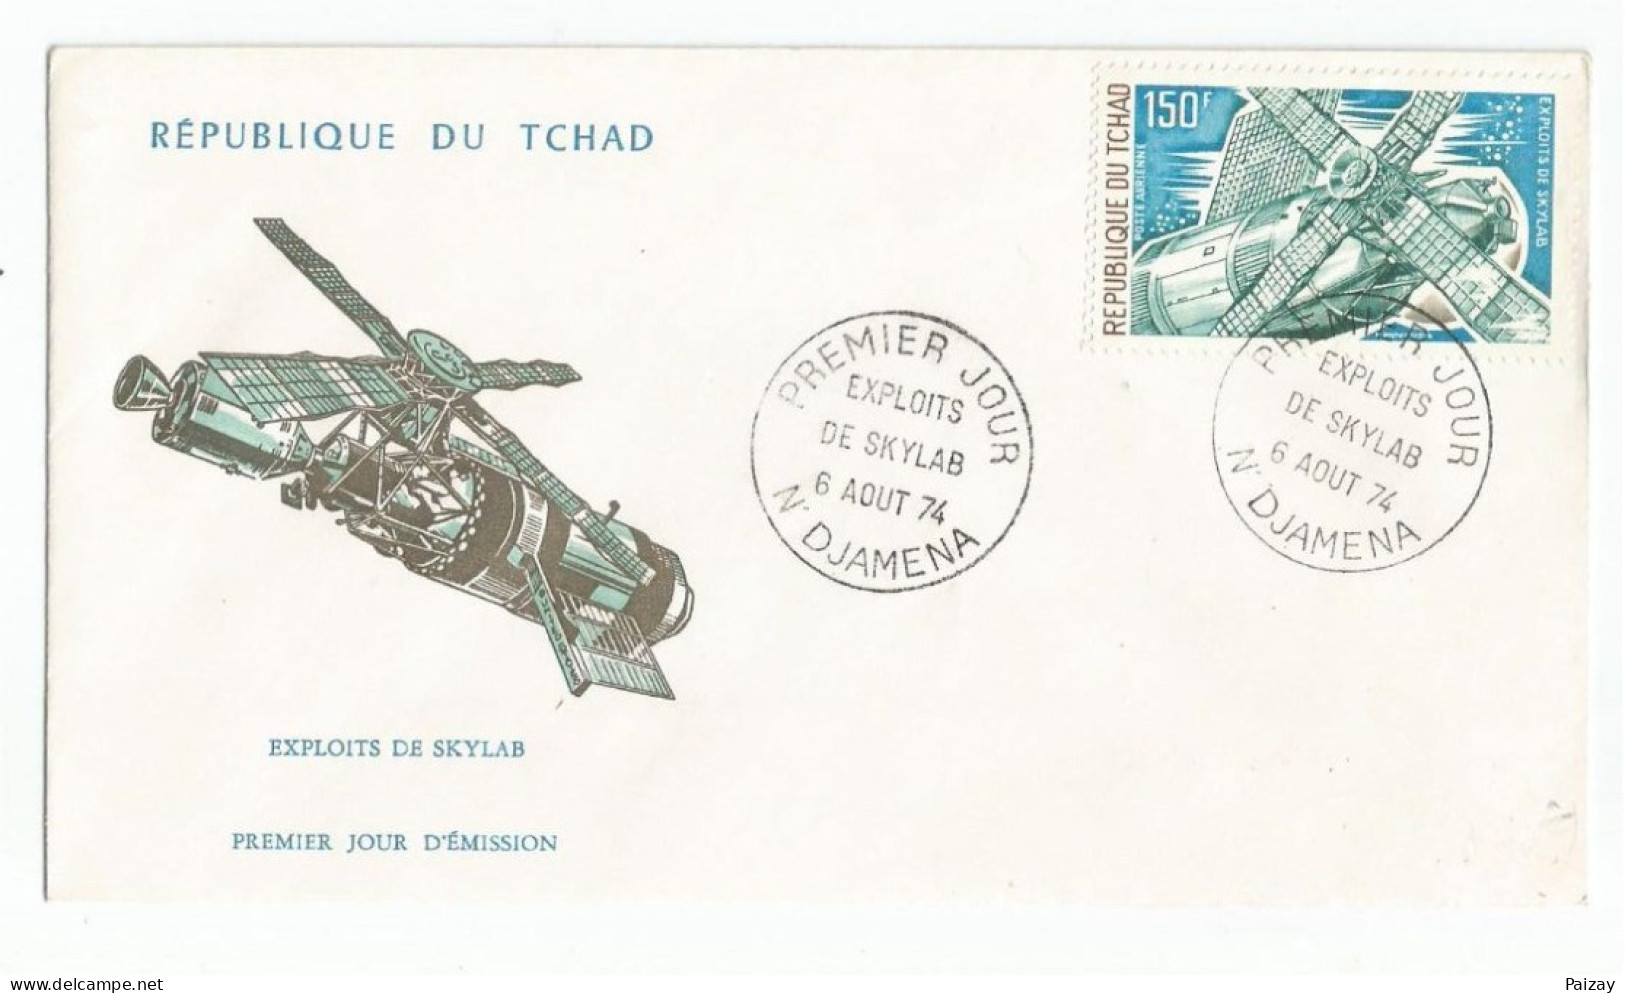 FDC République Tchad 6 Aout 1974 Poste Aérienne Exploits De Skylab Cachet N Djamena Afrique N° 146 Et 147 - Chad (1960-...)